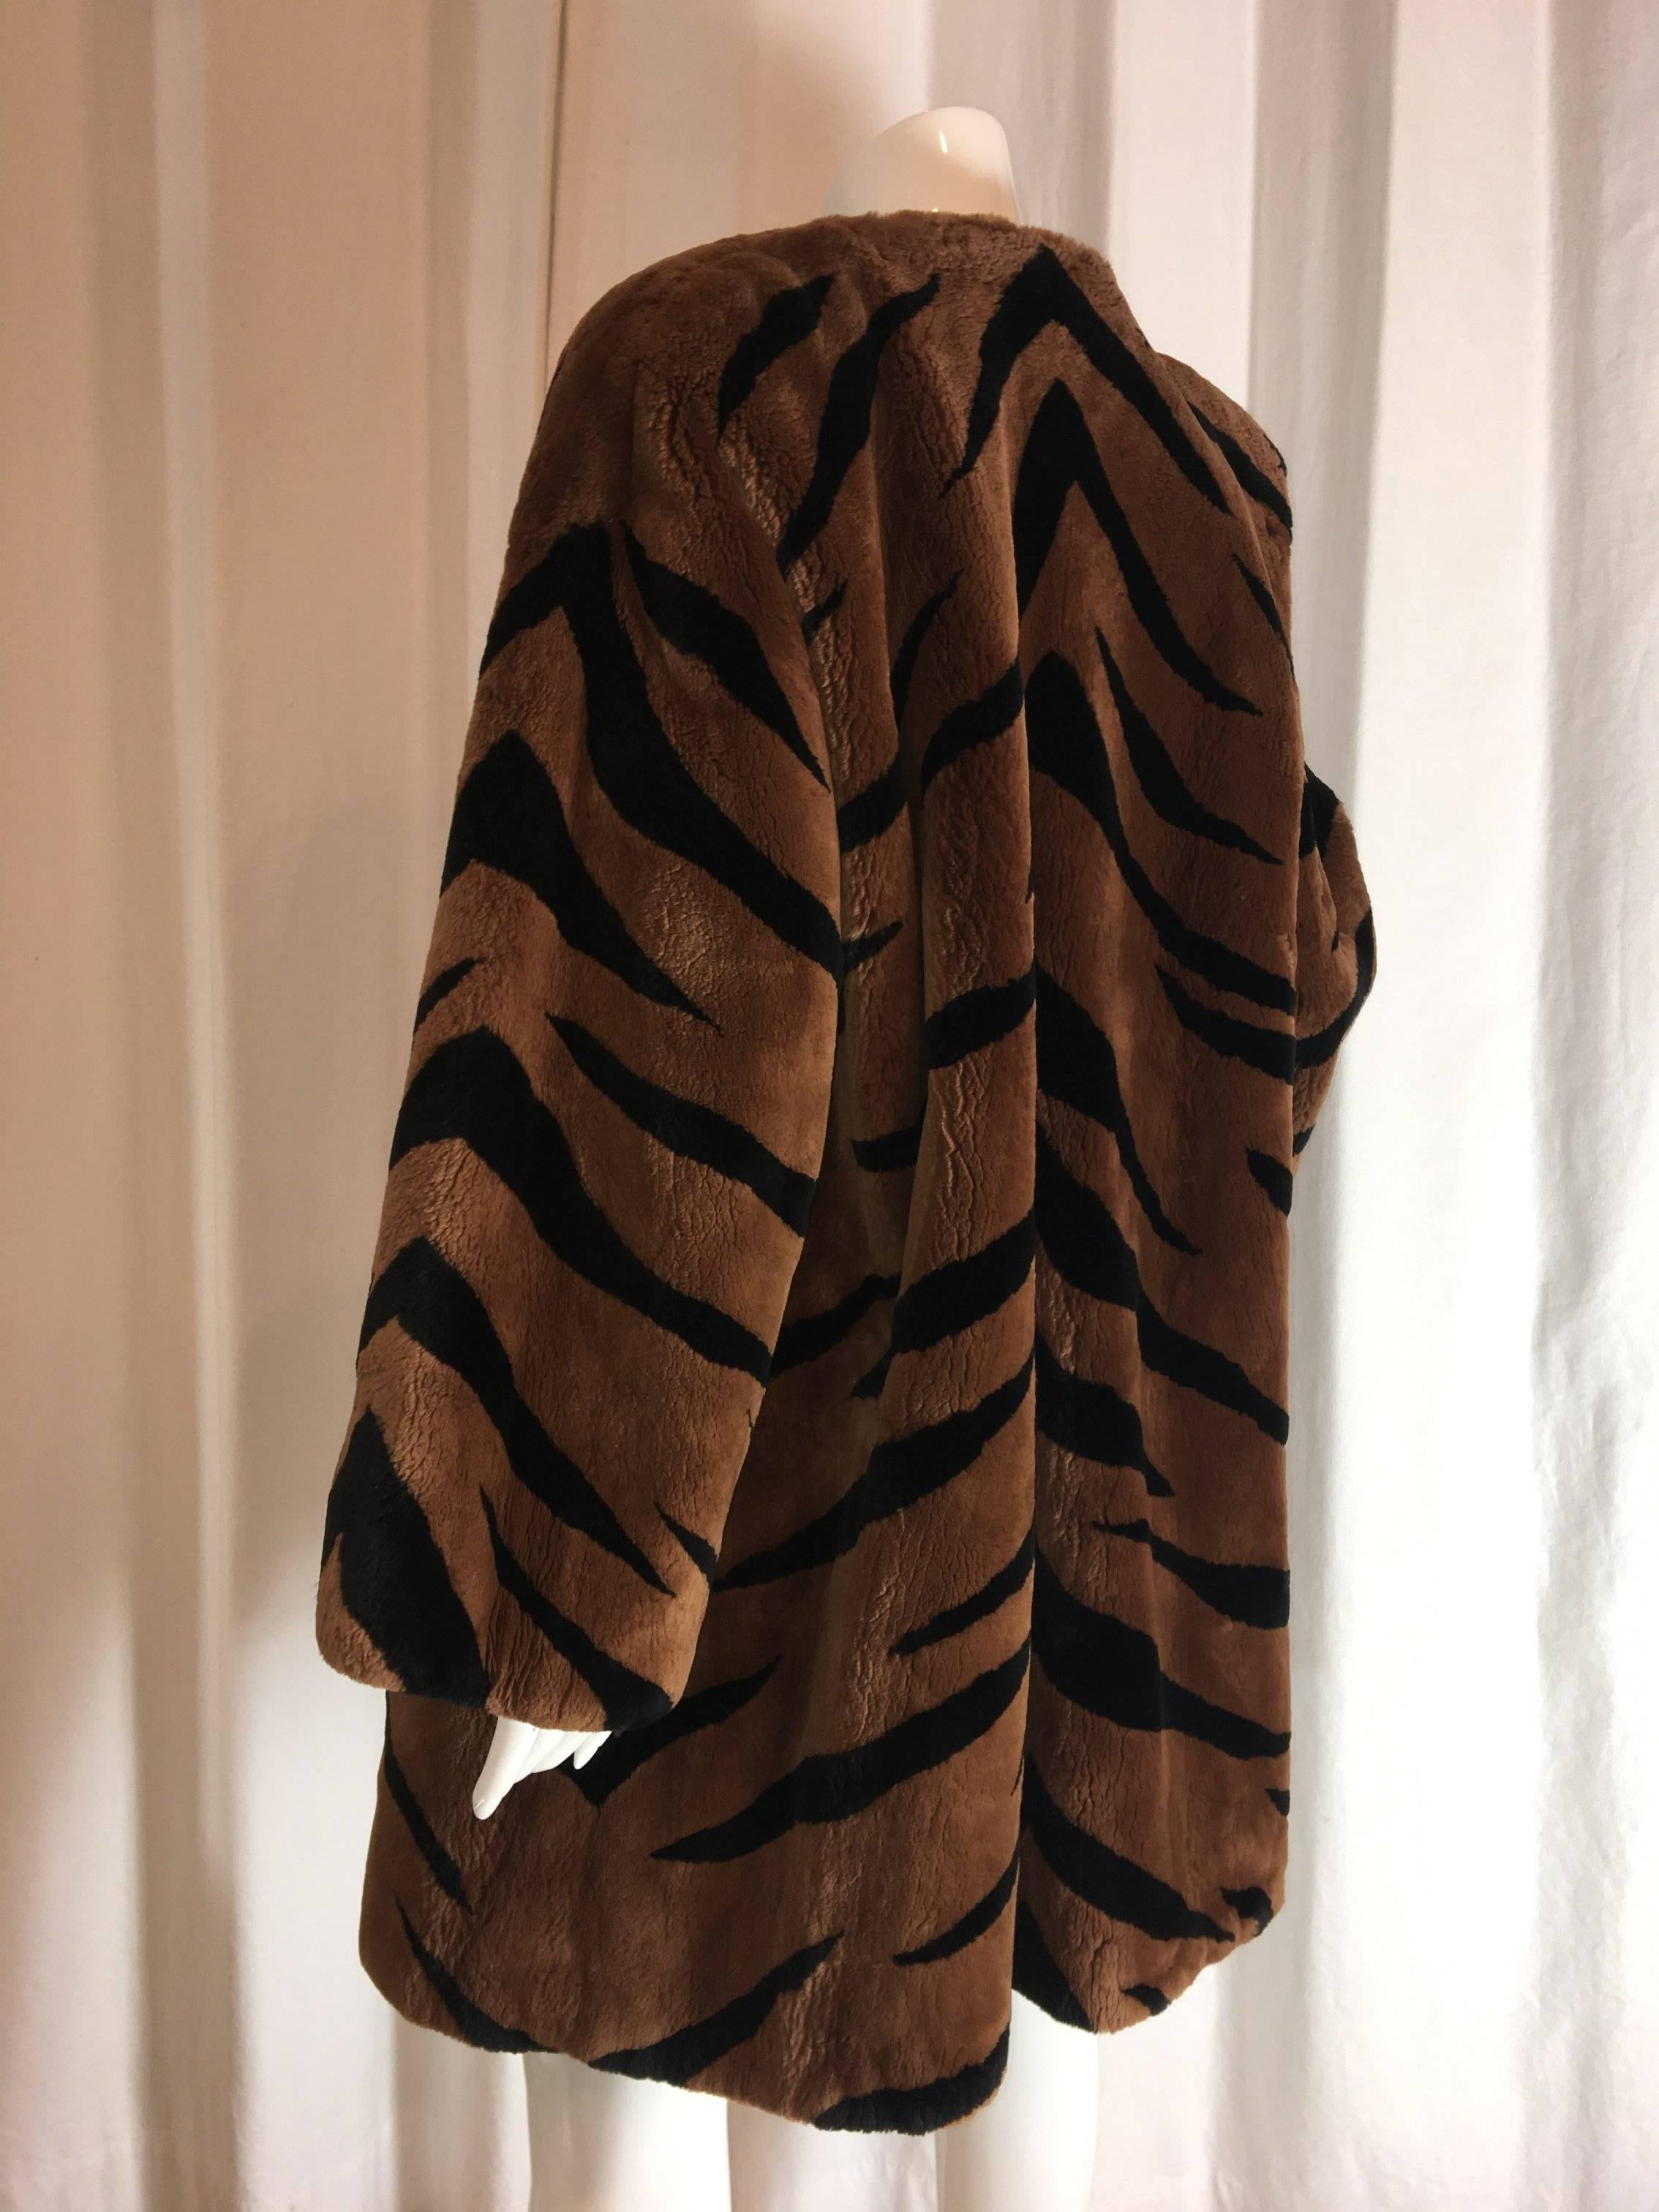 Alixaudre Tiger Print Fur Beaver Fur Coat. Mid length in brown and black.